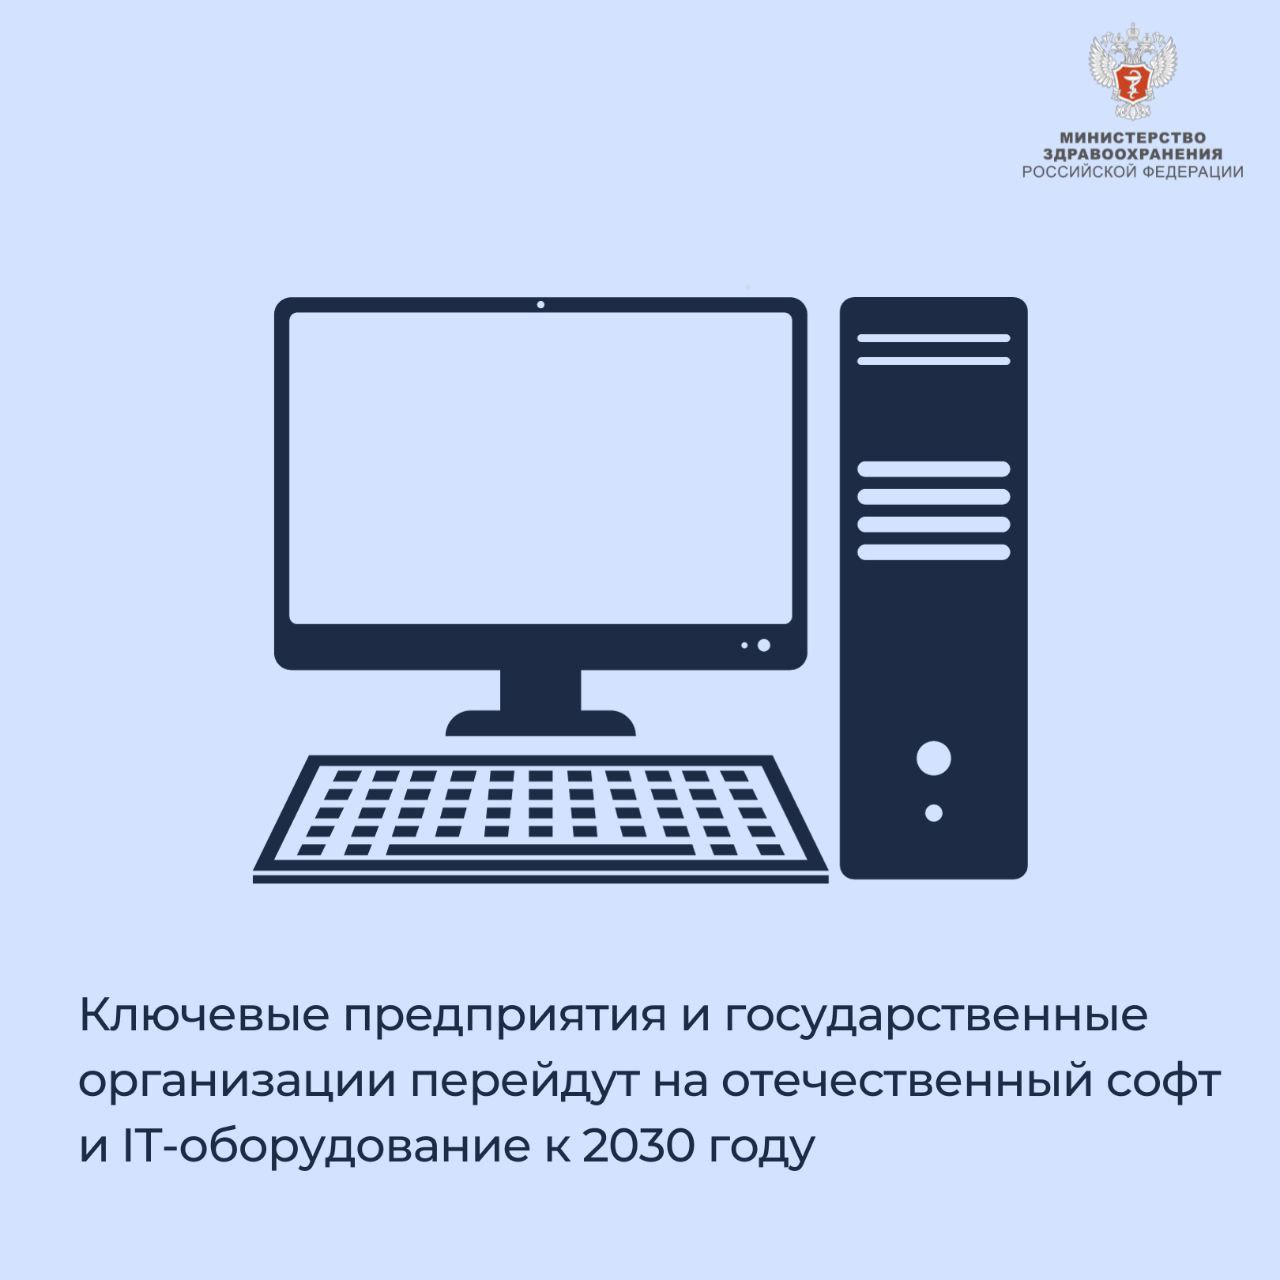 Ключевые предприятия и государственные организации перейдут на отечественный софт и IT-оборудование к 2030 году